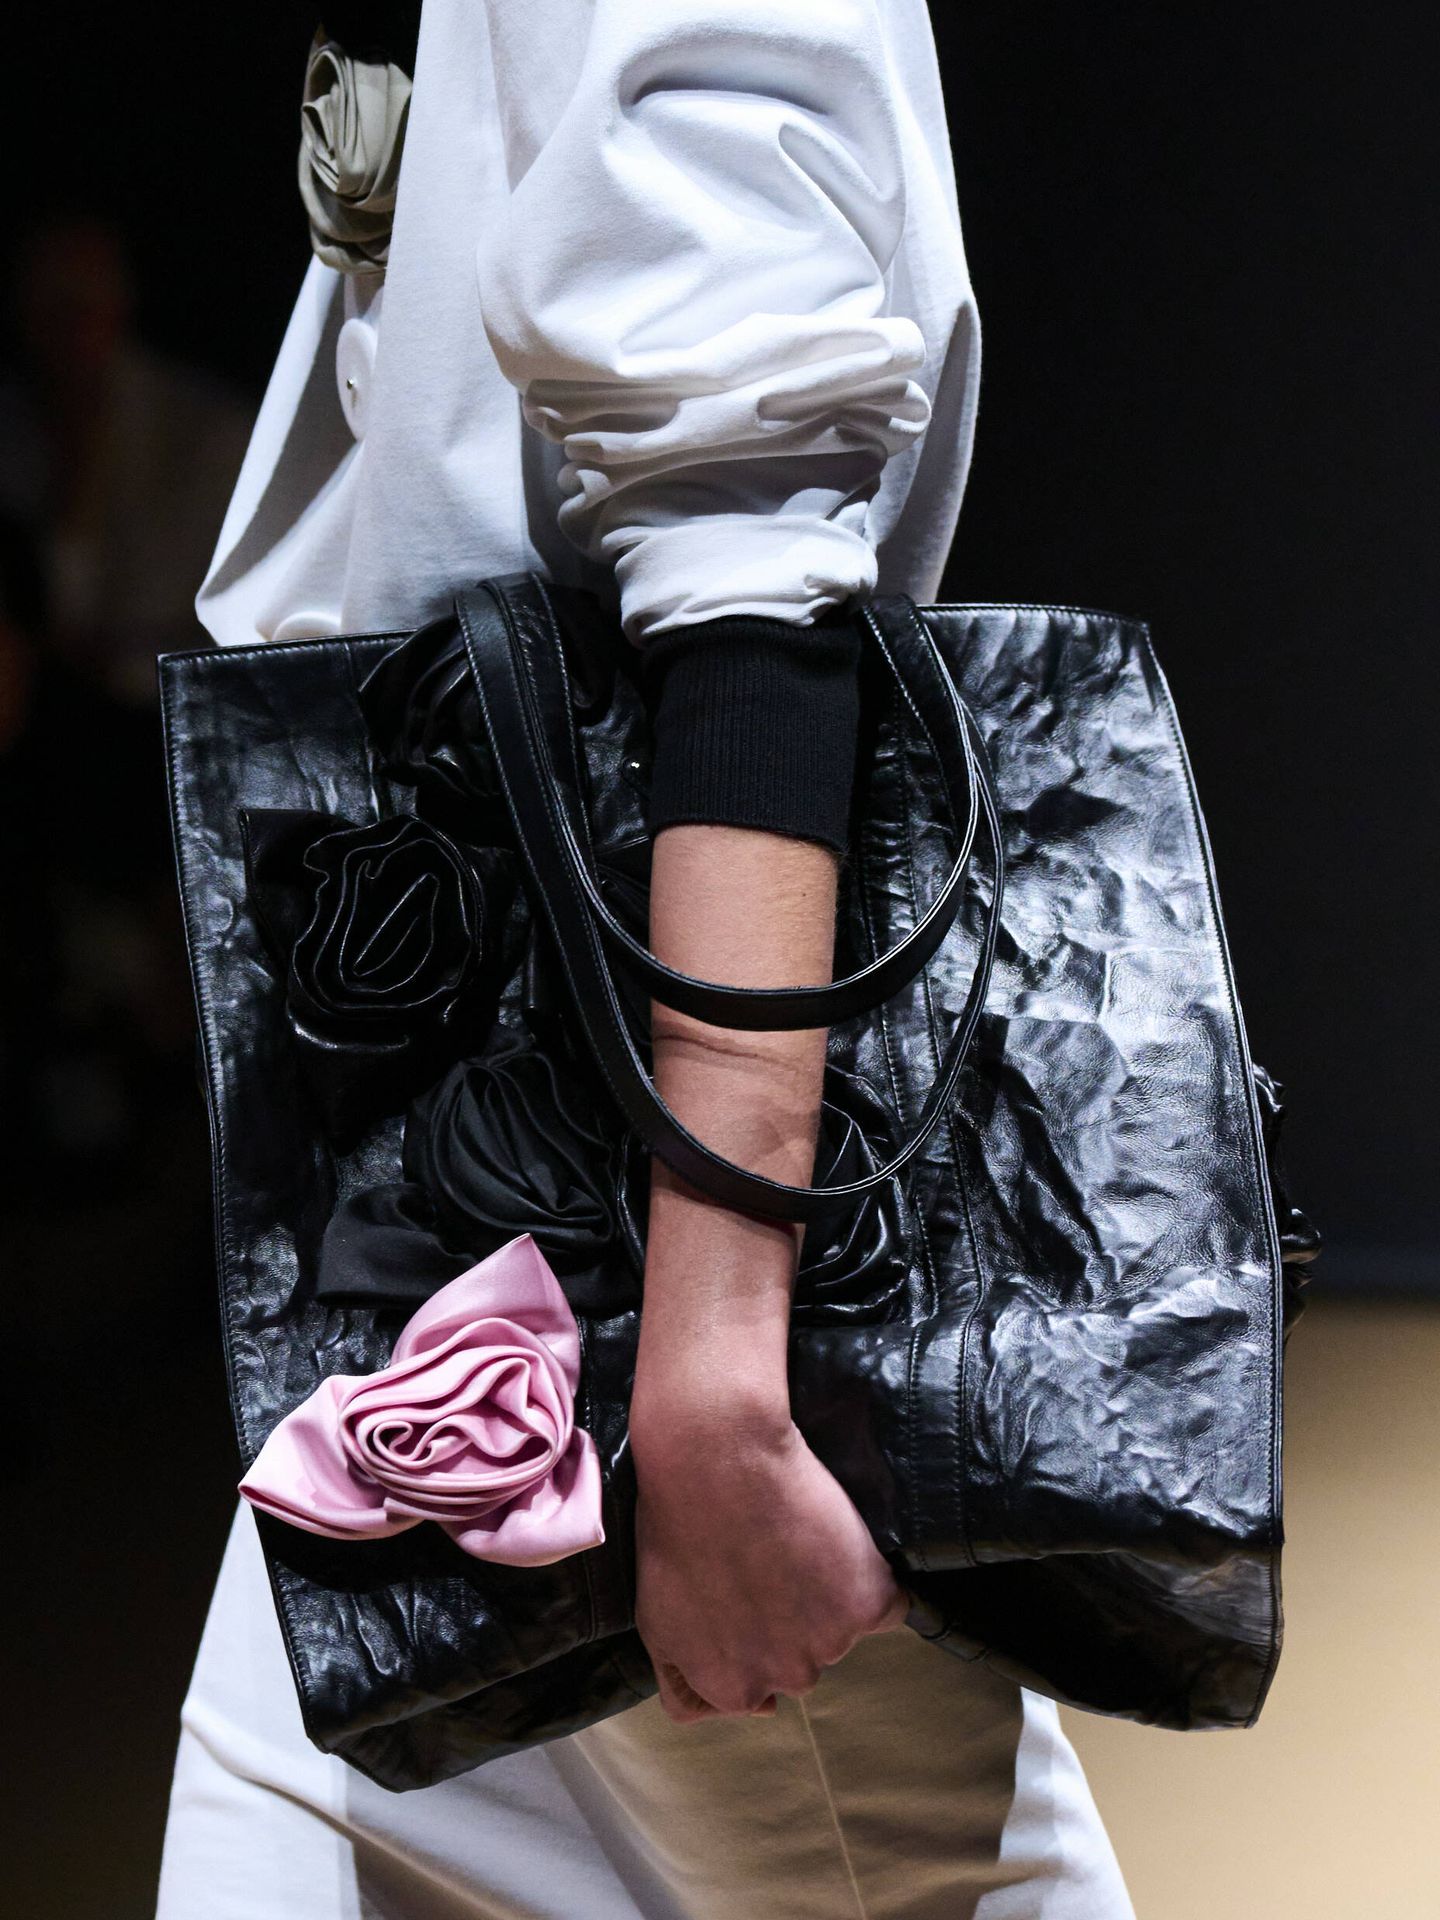 Detalle del bolso ‘tote’ de Prada, con flores en rosa y negro. (Launchmetrics Spotlight)